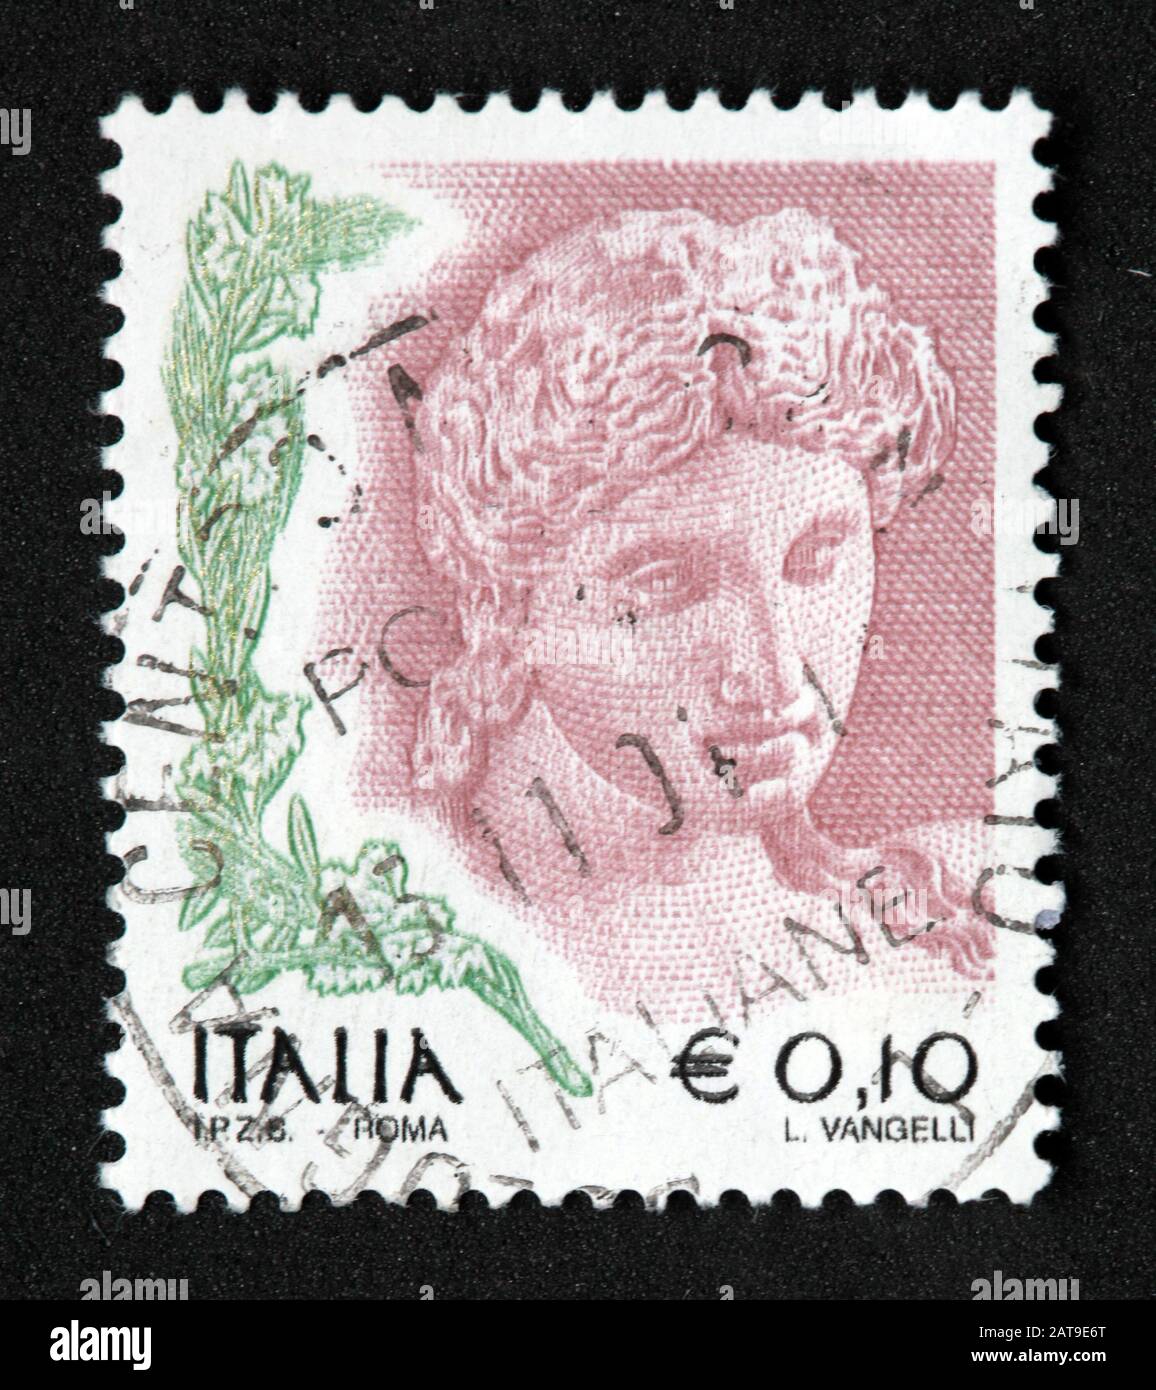 Francobollo italiano, usato da poste Italia e franco, italia E0.10 L  Vangelli Foto stock - Alamy